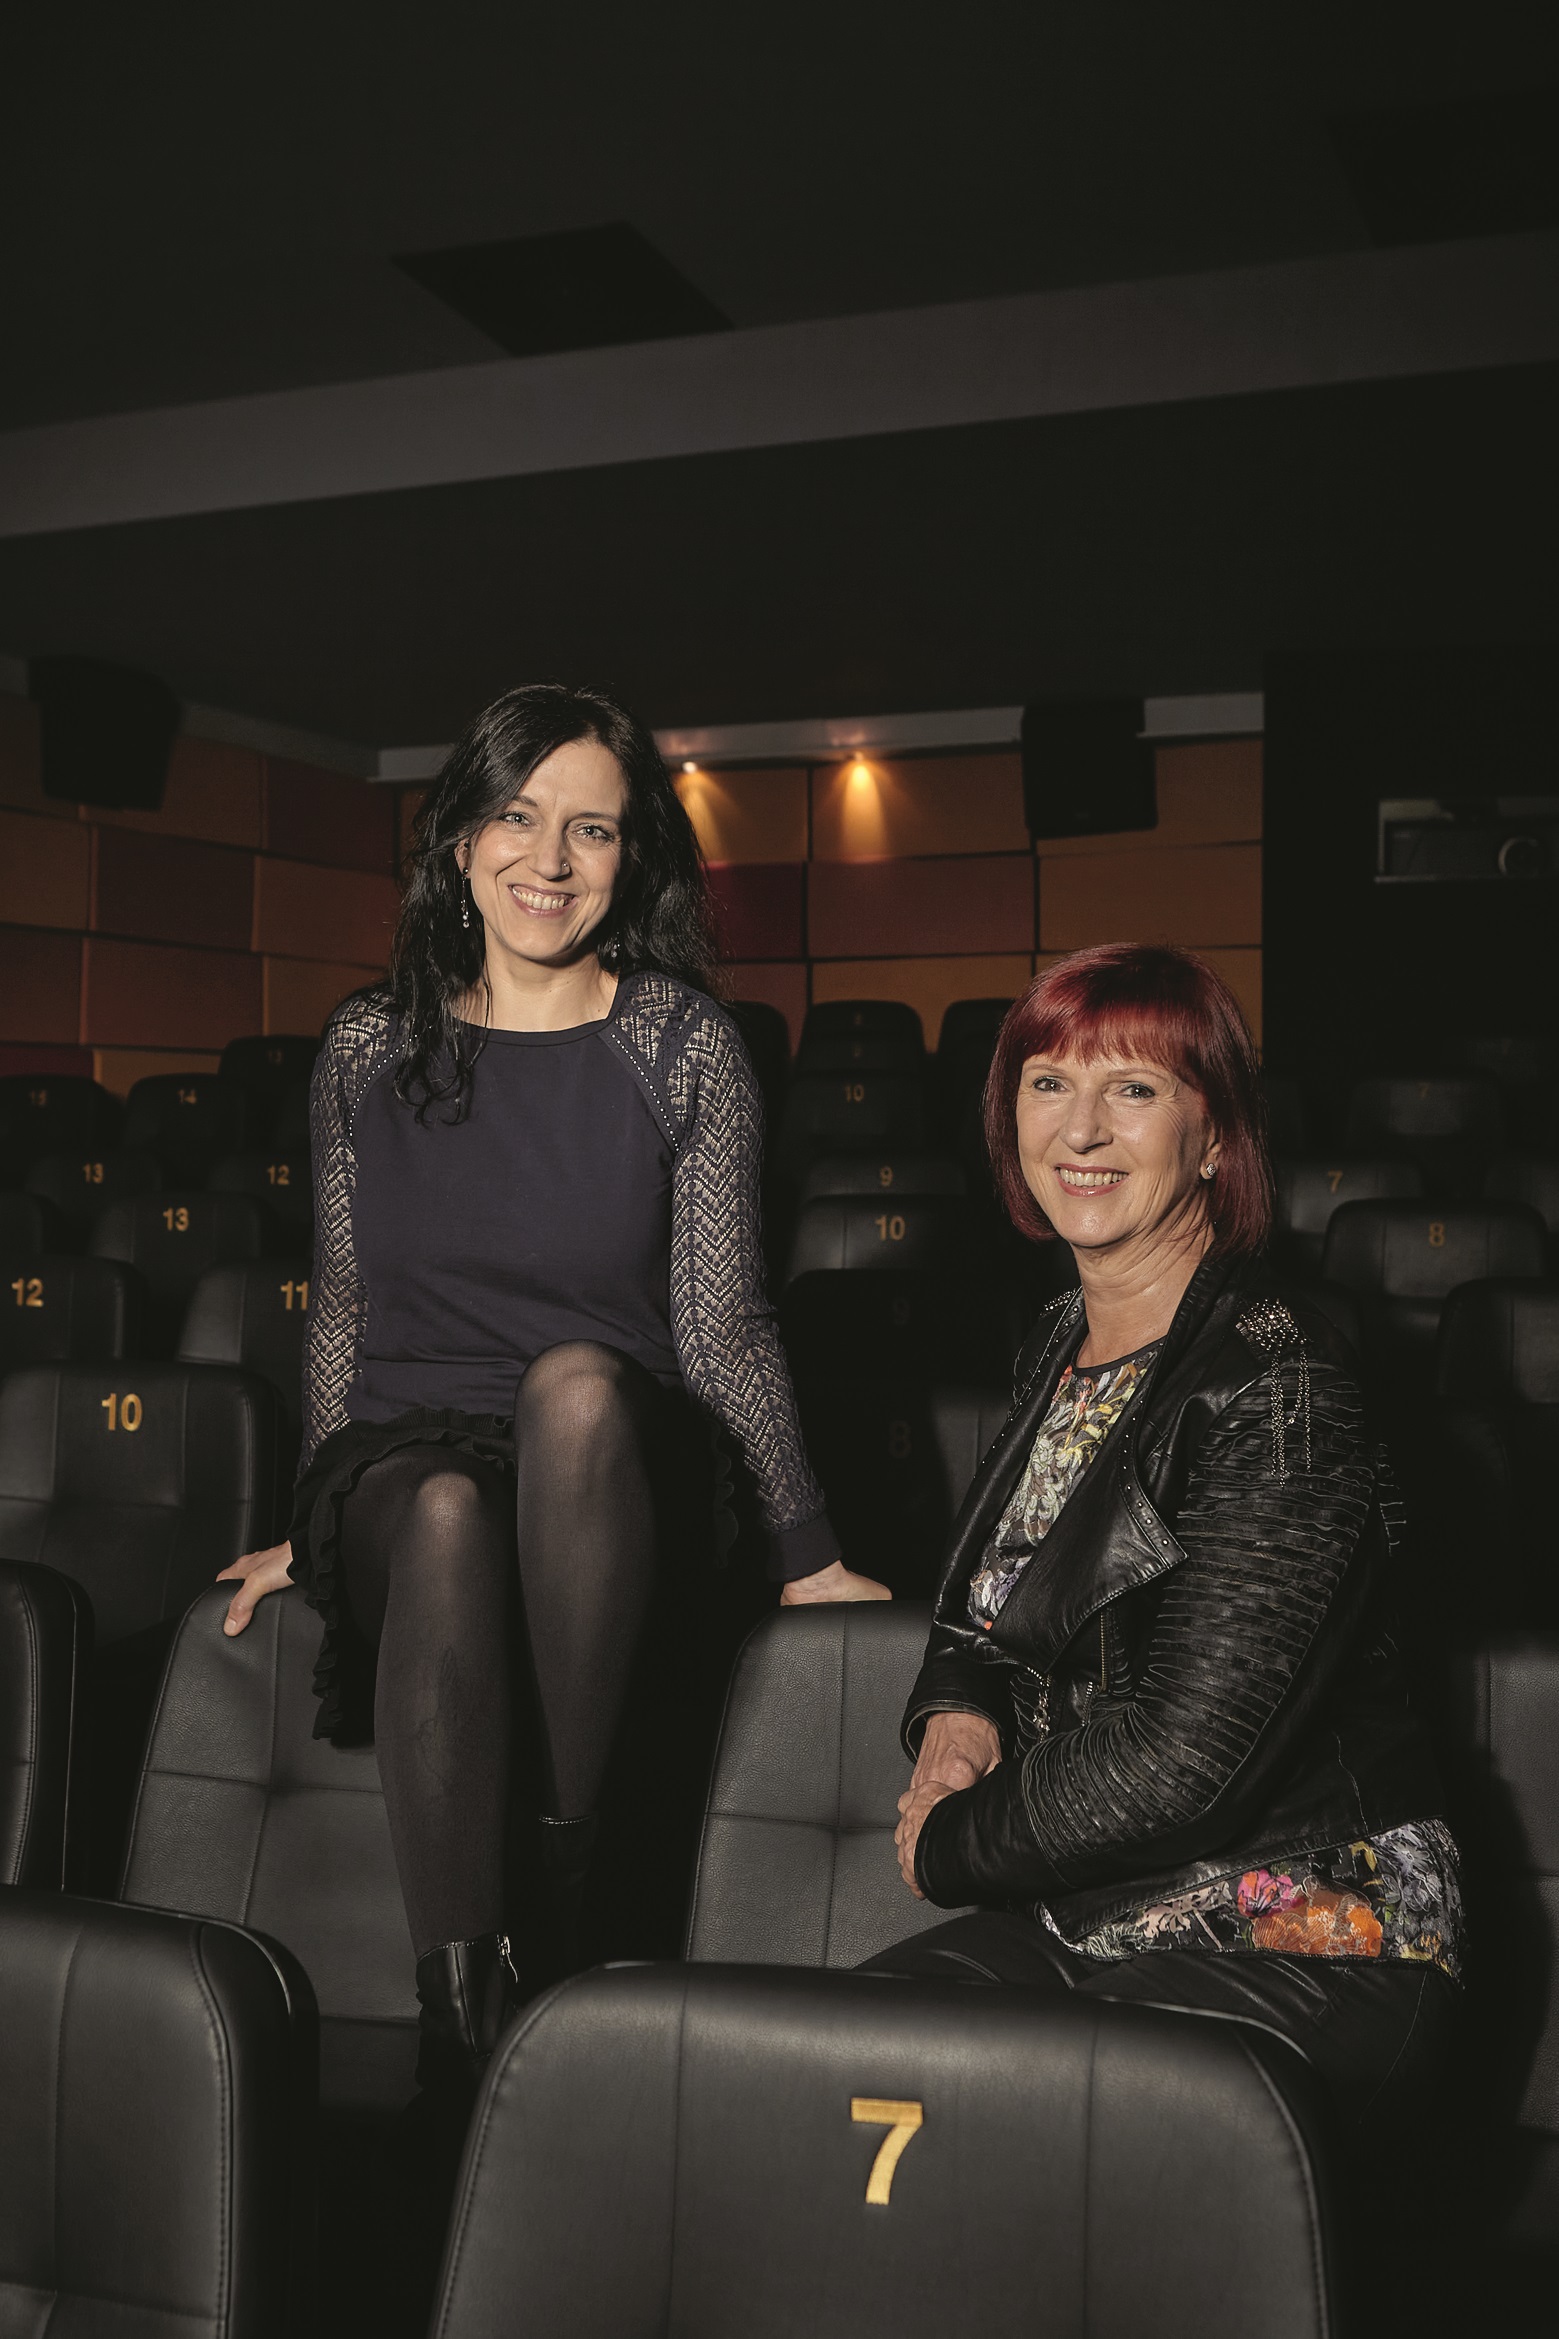   »Es ist nicht immer alles geschmeidig gelaufen an der Kino-Front« | Petra und Kristin Klemann über Kinos in Leipzig, Mütter und Töchter – und Zwergkaninchen  